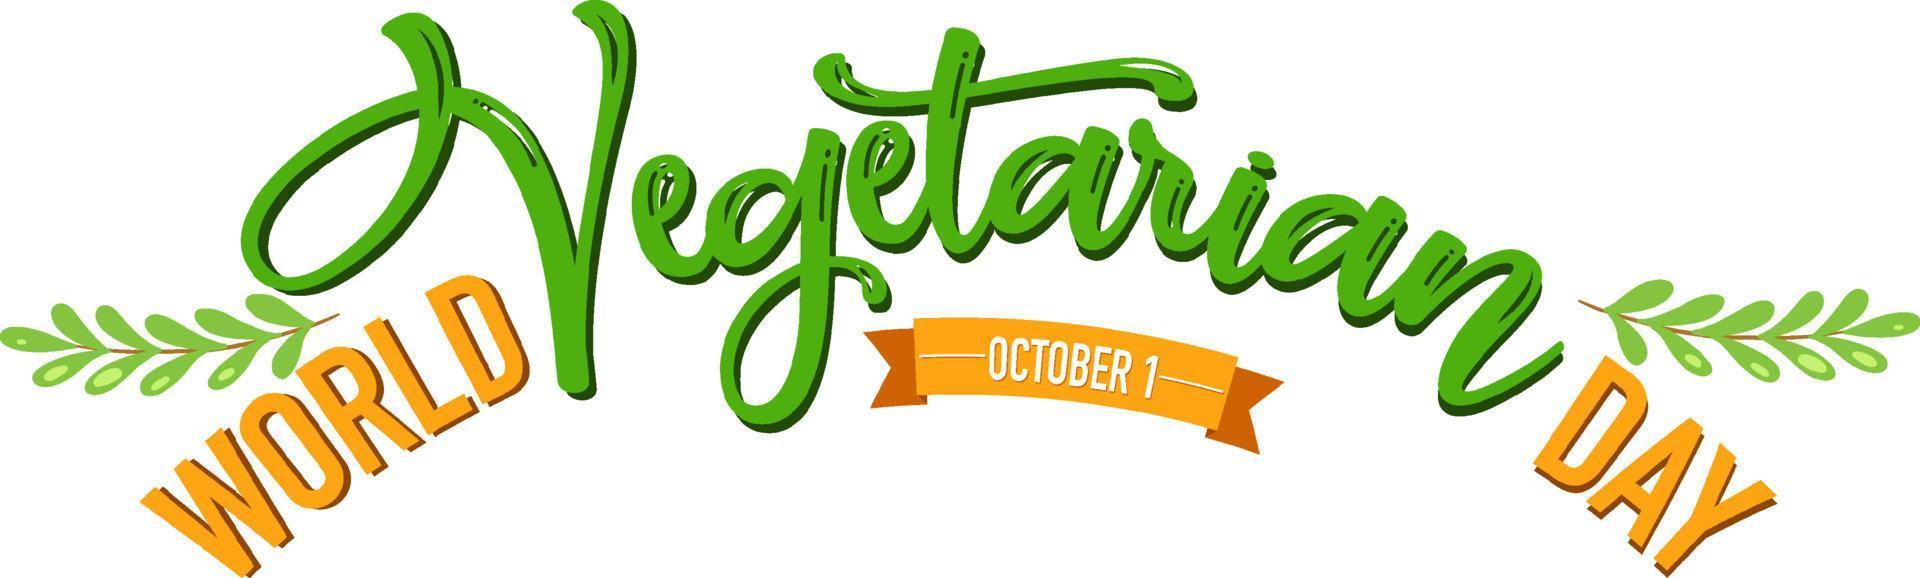 wereld vegetarisch dag logo op witte achtergrond vector